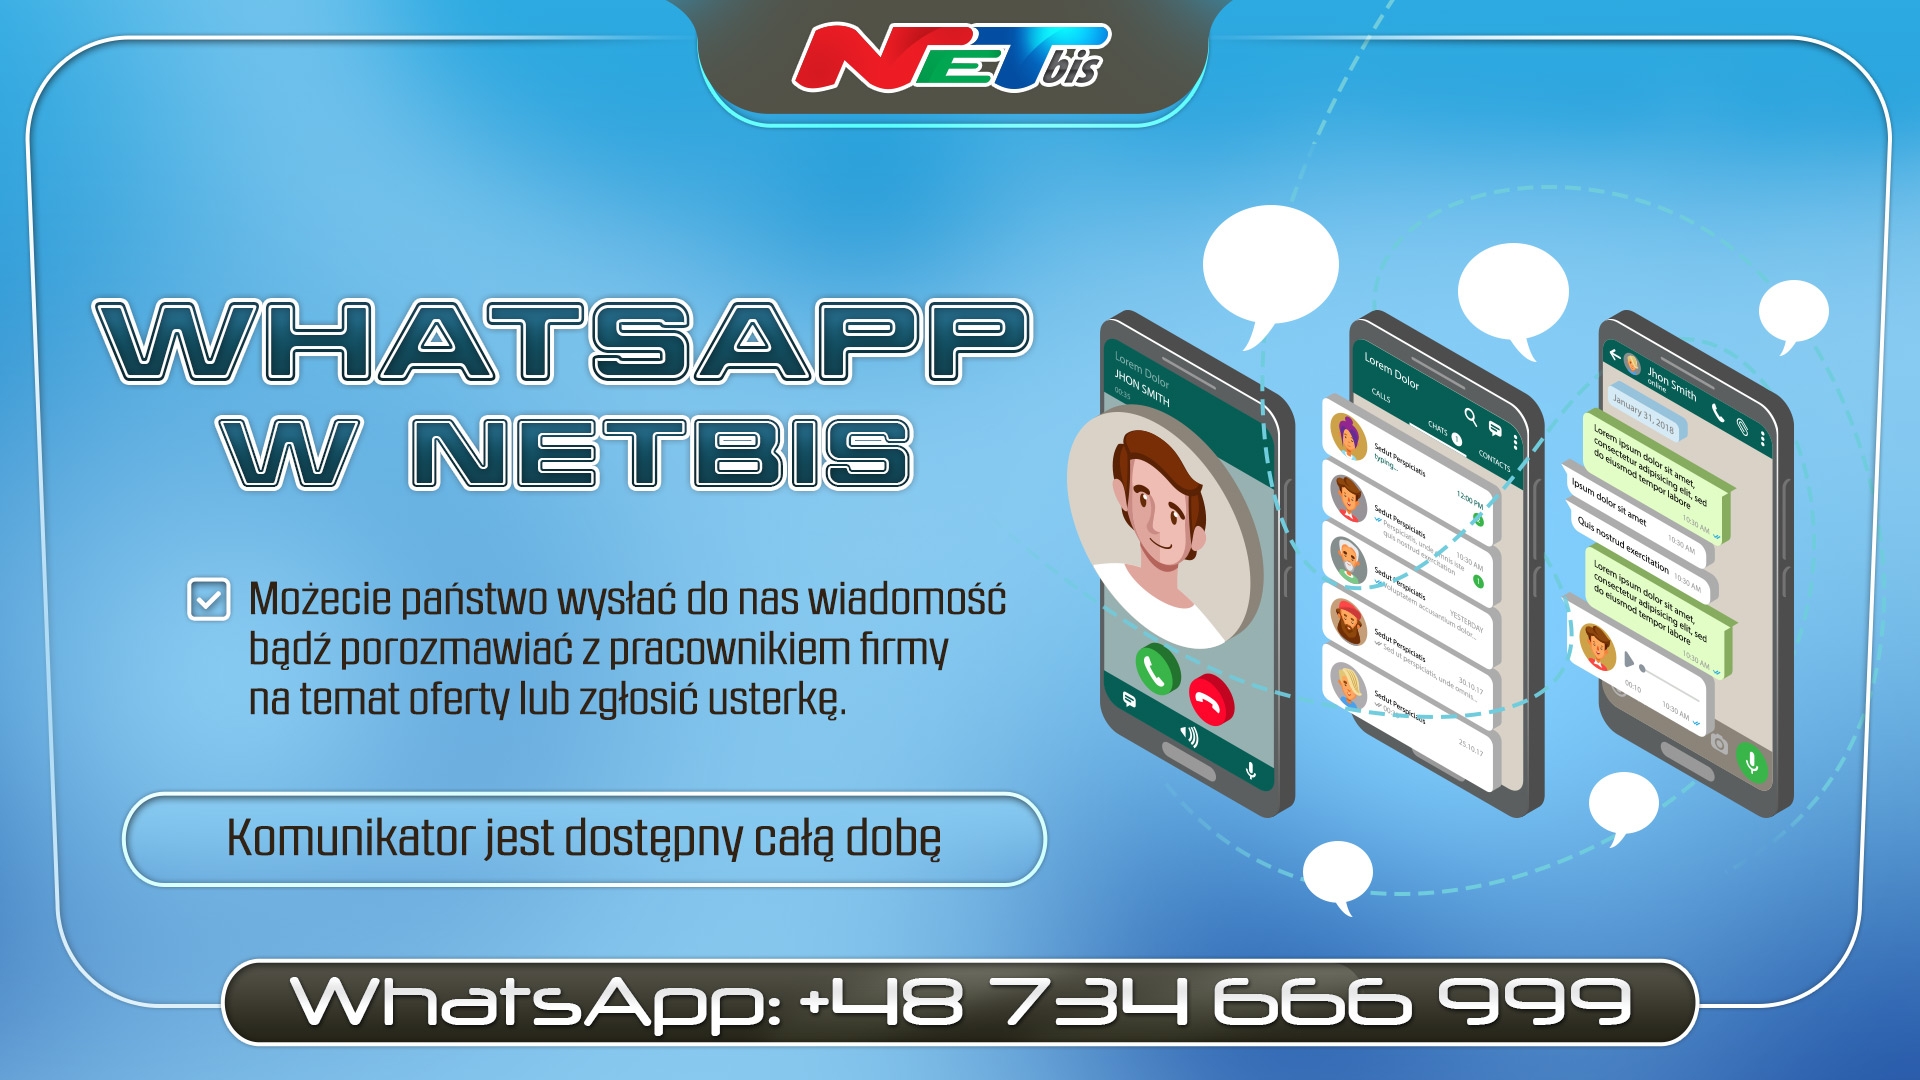 whatsapp-w-netbis.html